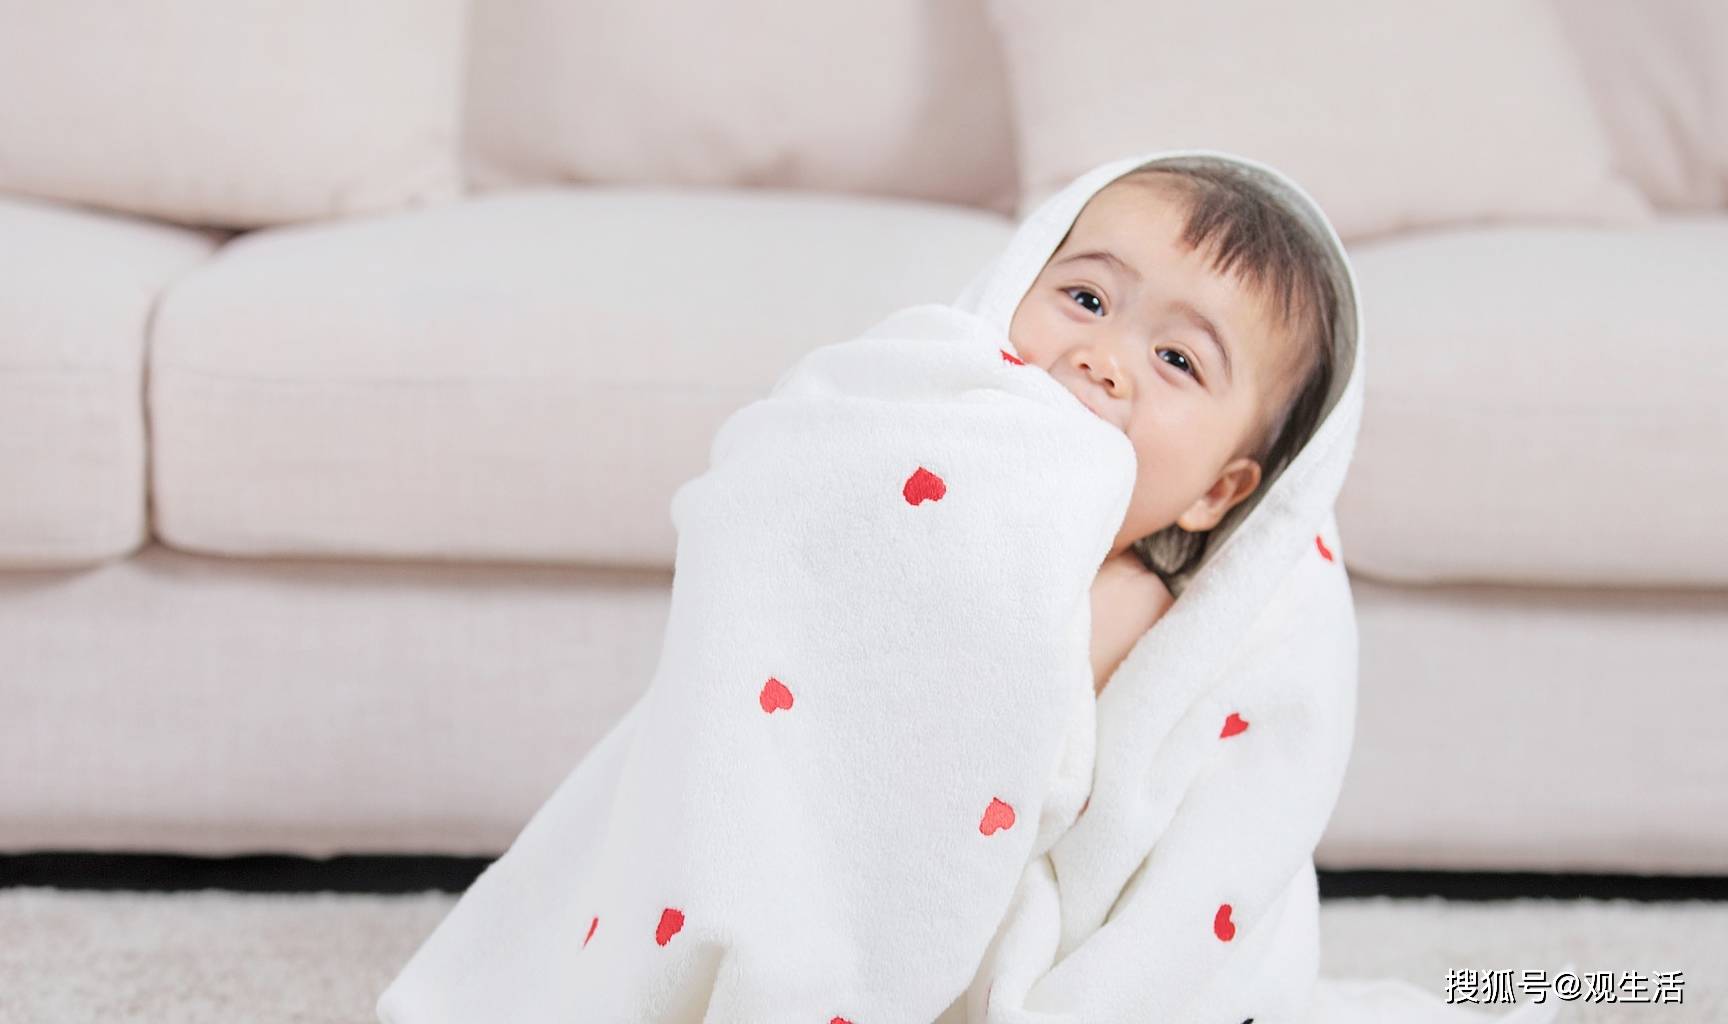 孩子反复咳嗽可能是感染了肺炎支原体 - 青岛新闻网